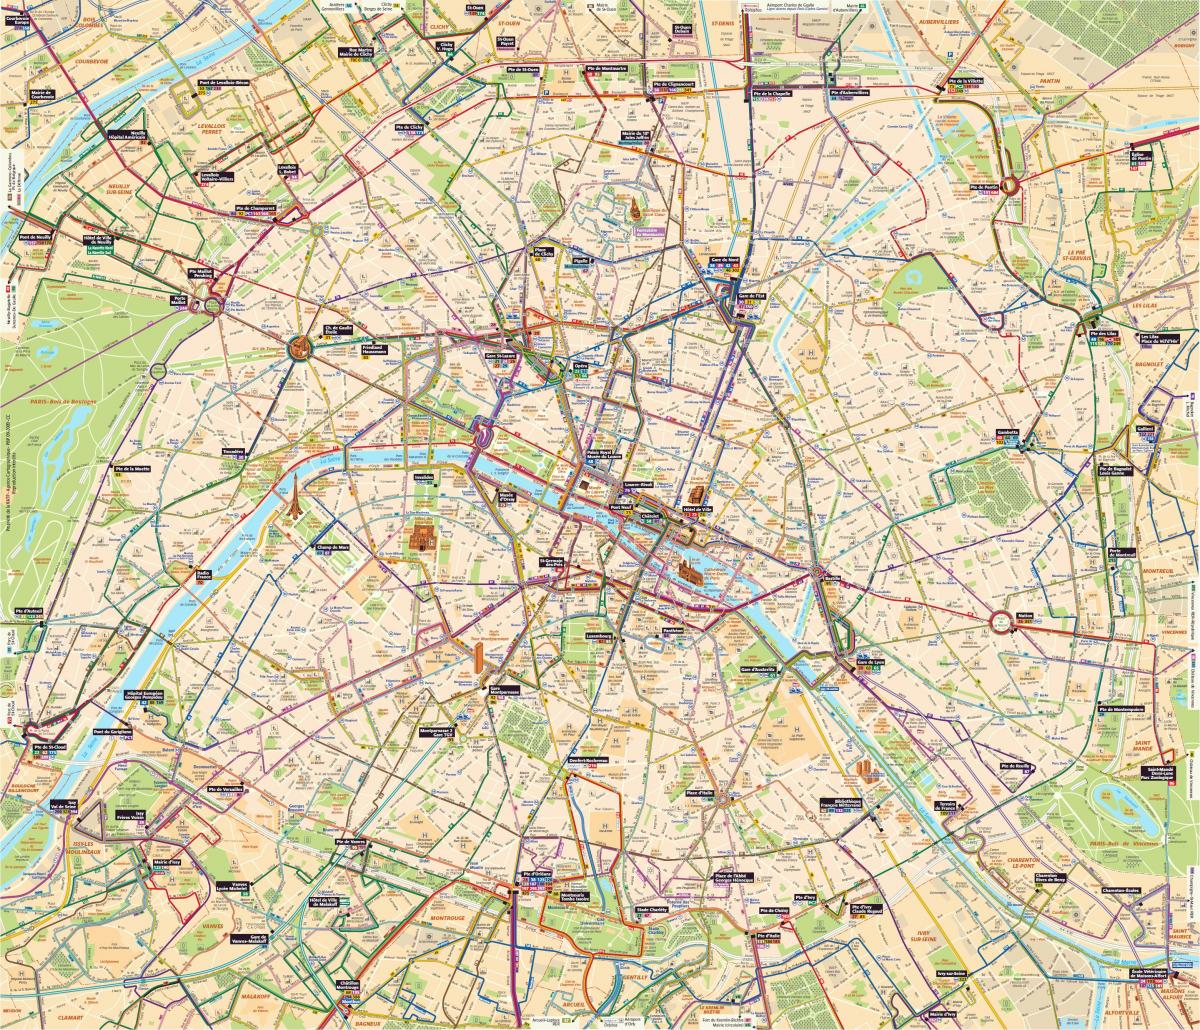 Zemljevid Pariza avtobus